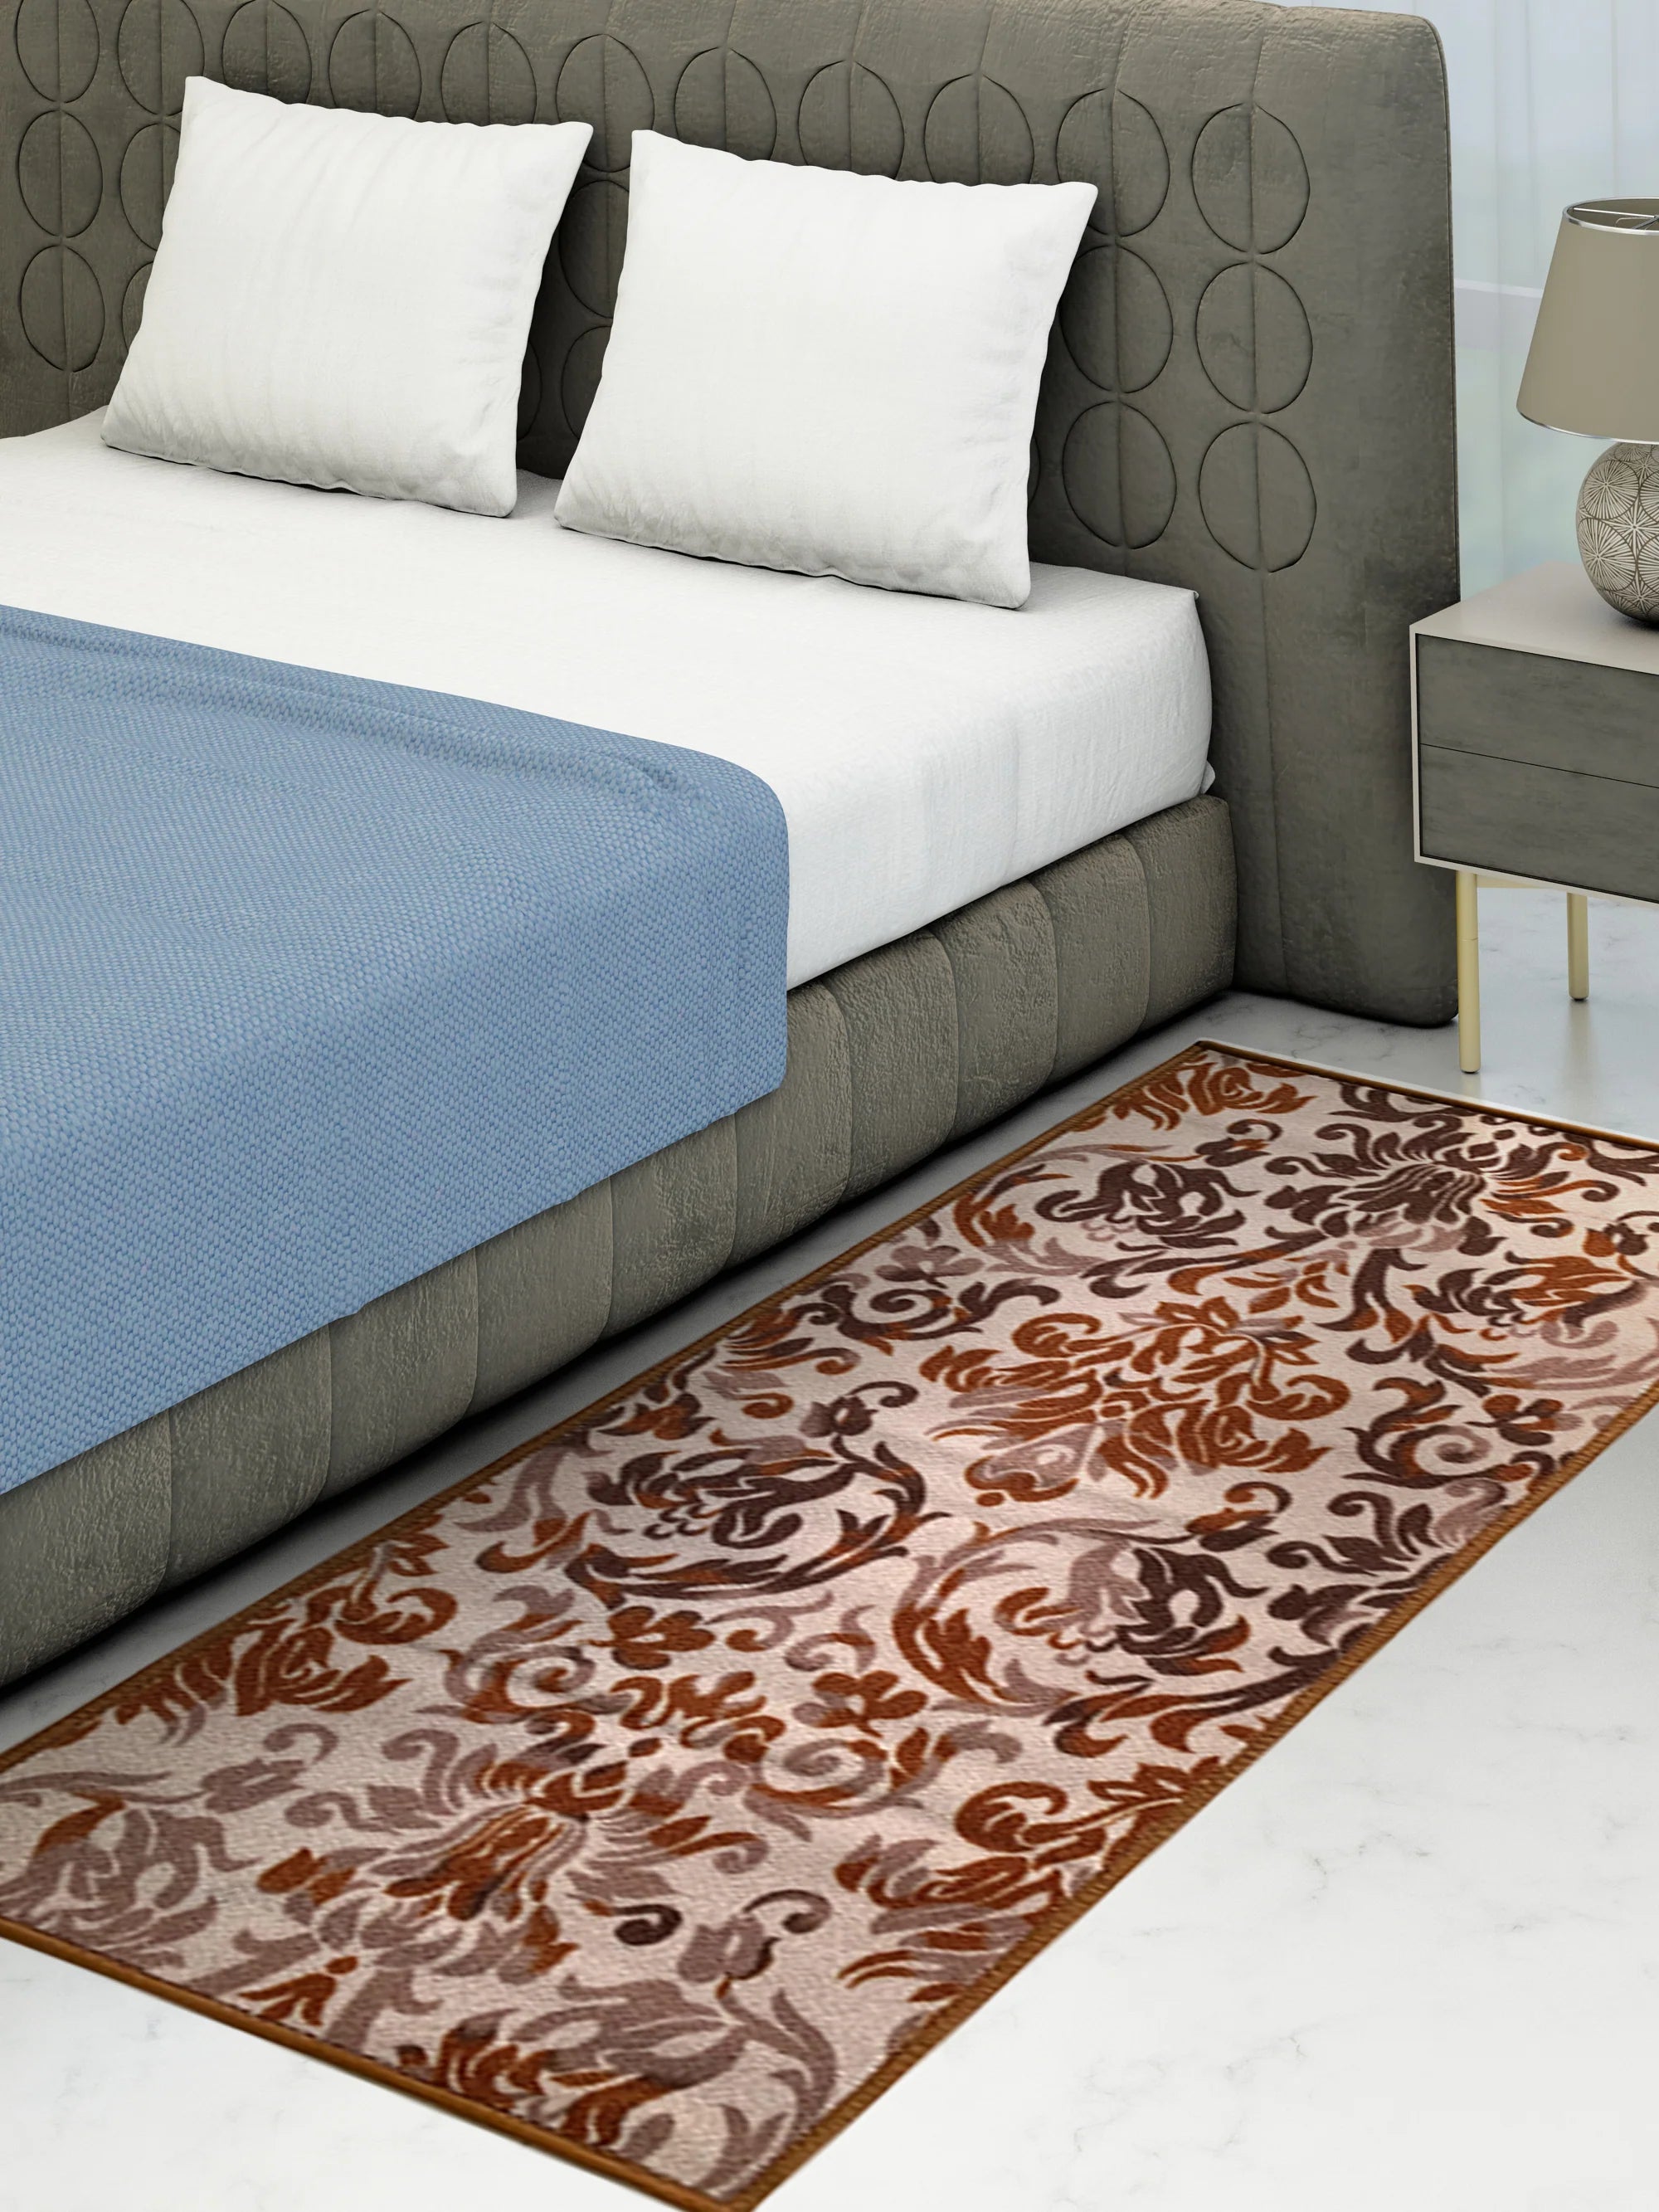 Athom Living English Beige Premium Anti Slip Printed Runner Carpet